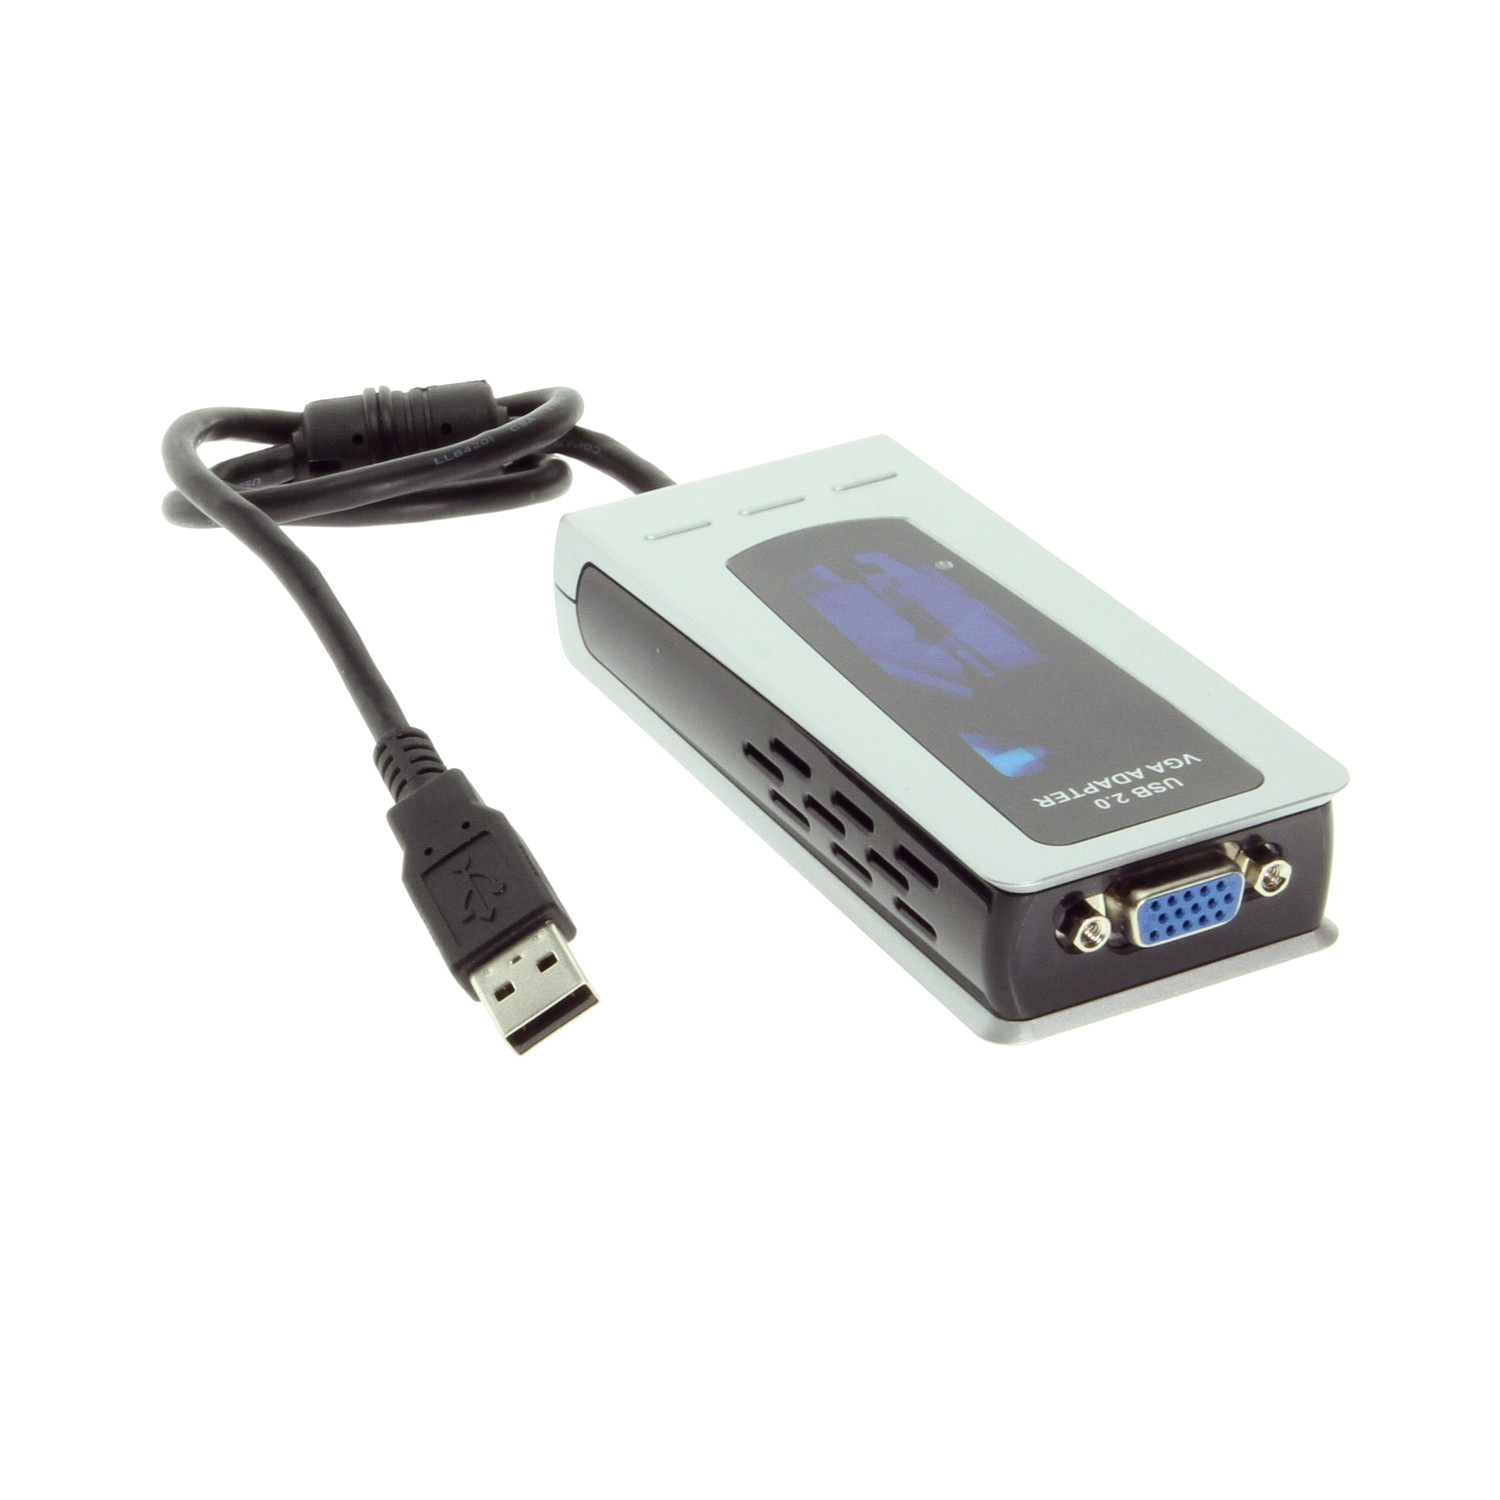 Skal Anbefalede faldskærm USB 2.0 External Graphics Card for XP and Vista up to 1920x1200 Resolution